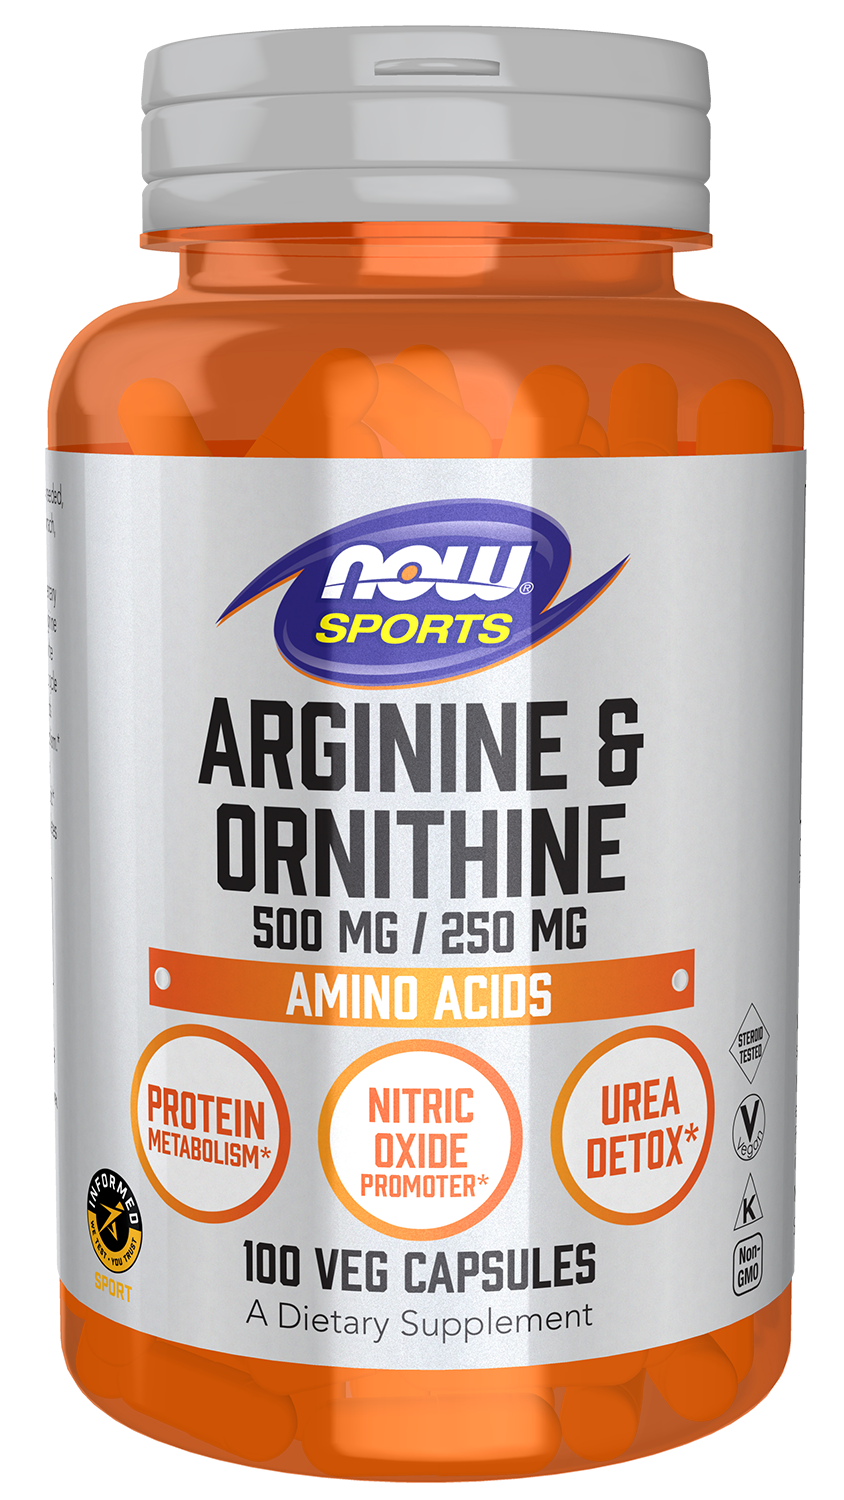 Arginine & Ornithine 500 mg / 250 mg - 100 Veg Capsules Bottle Front